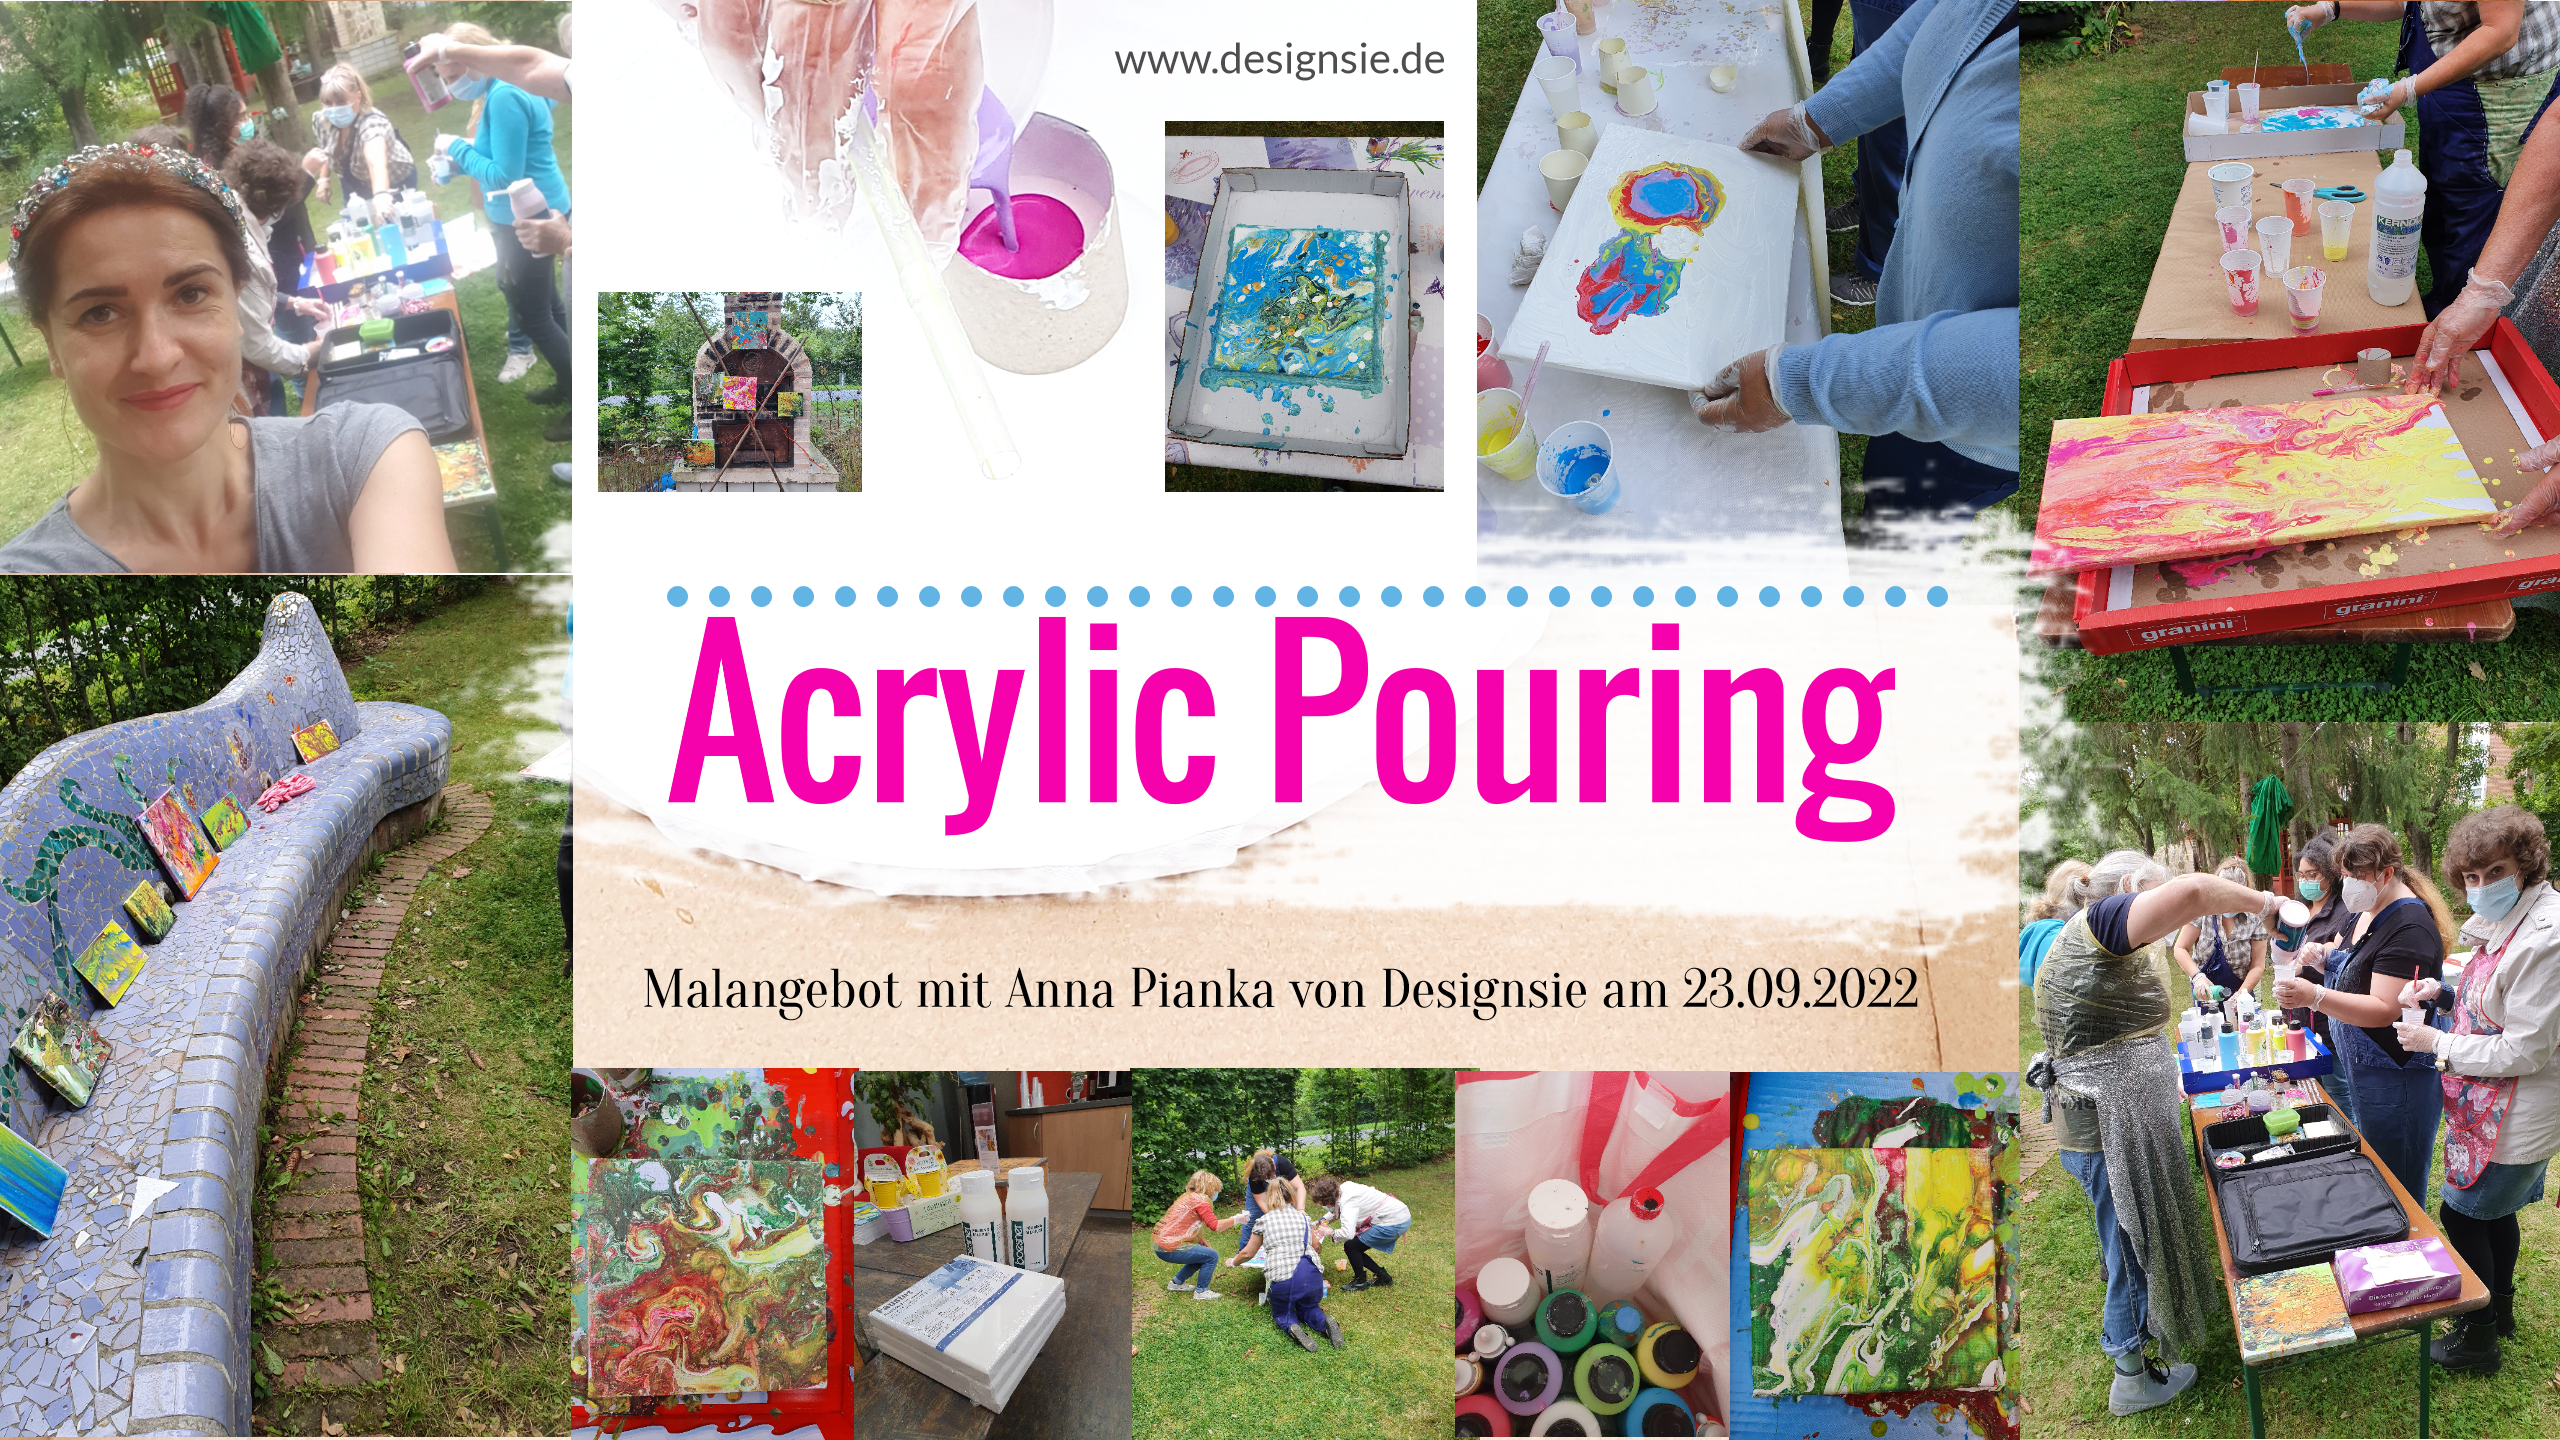 Malangebot 23.09.2022 zu Acrylic Pouring mit Anna Pianka von Designsie